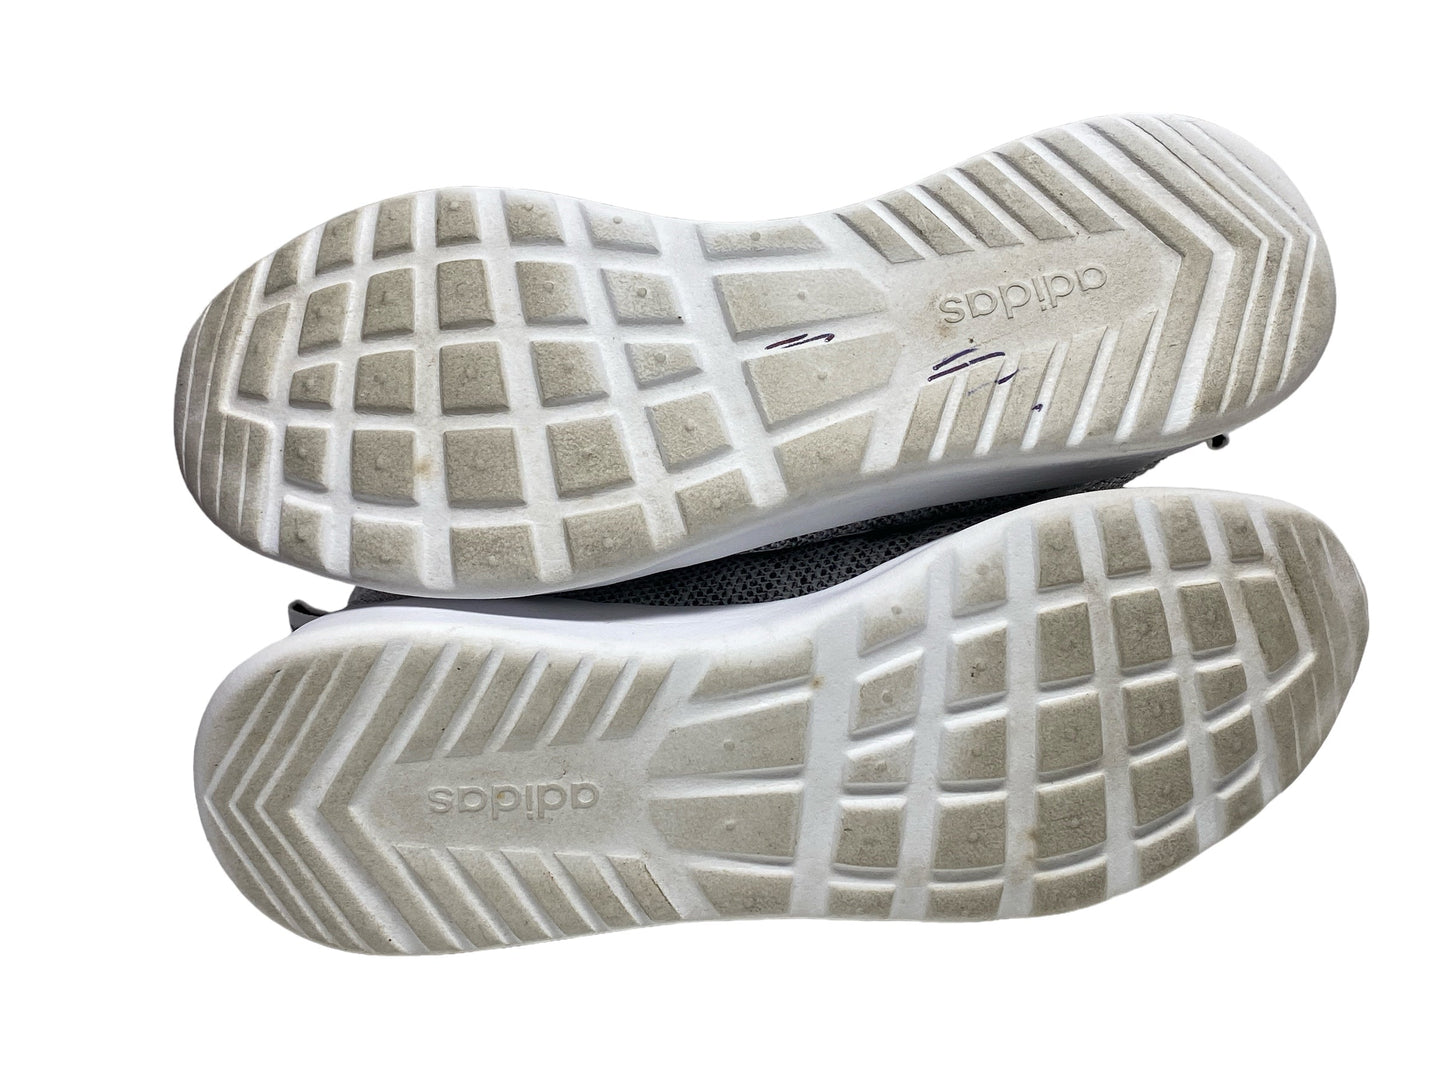 Grey & White Shoes Athletic Adidas, Size 6